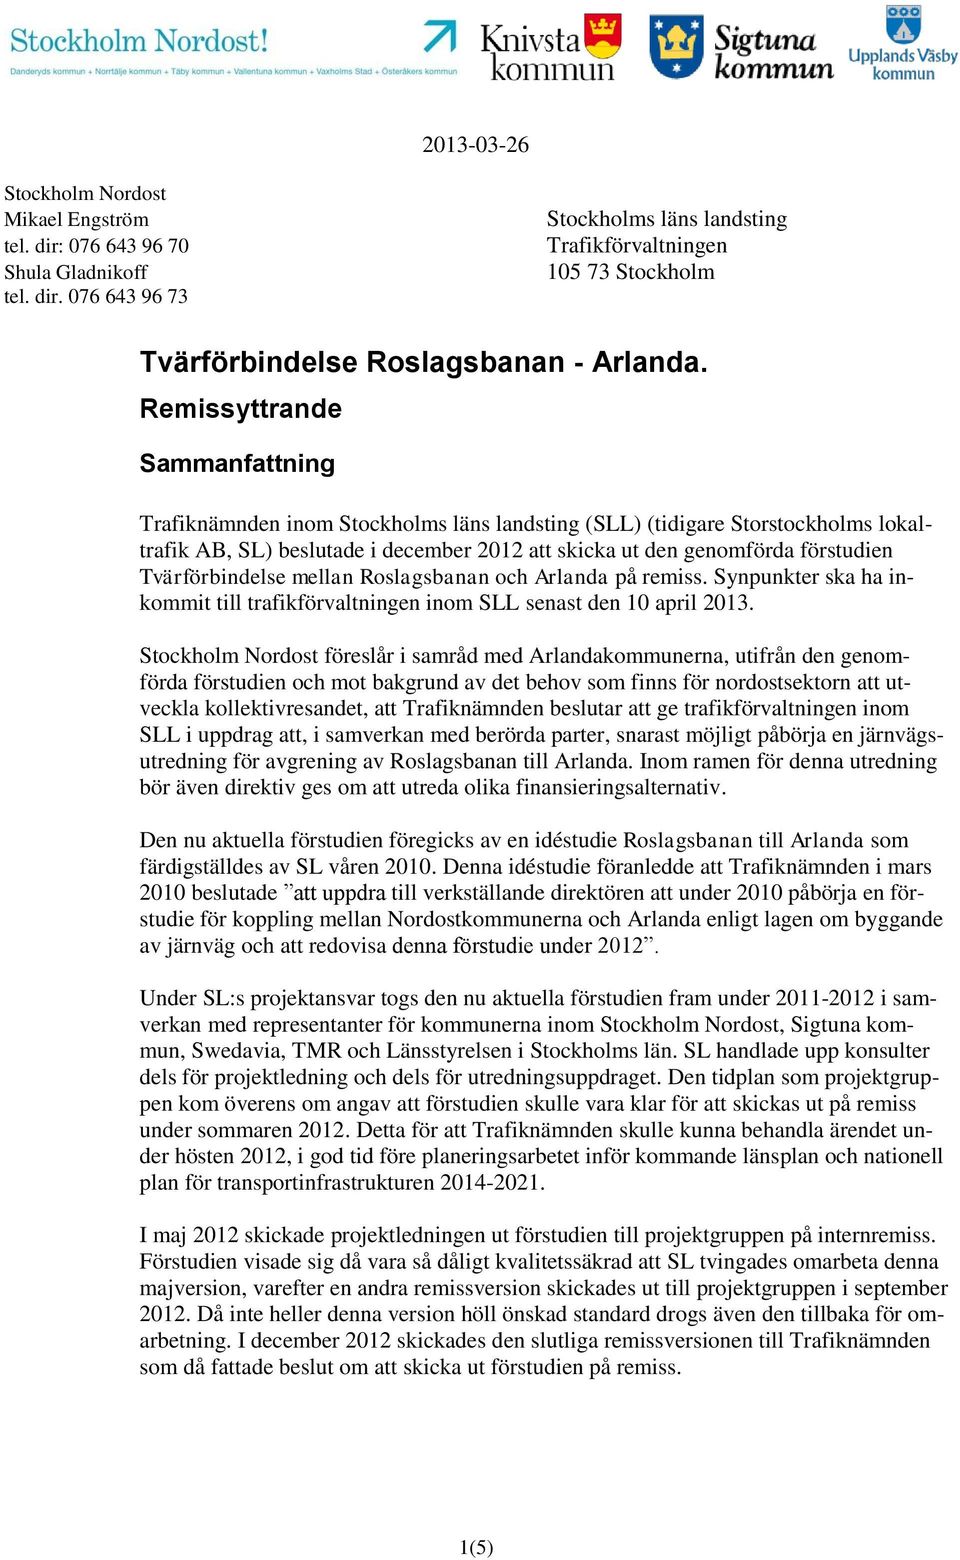 Tvärförbindelse mellan Roslagsbanan och Arlanda på remiss. Synpunkter ska ha inkommit till trafikförvaltningen inom SLL senast den 10 april 2013.